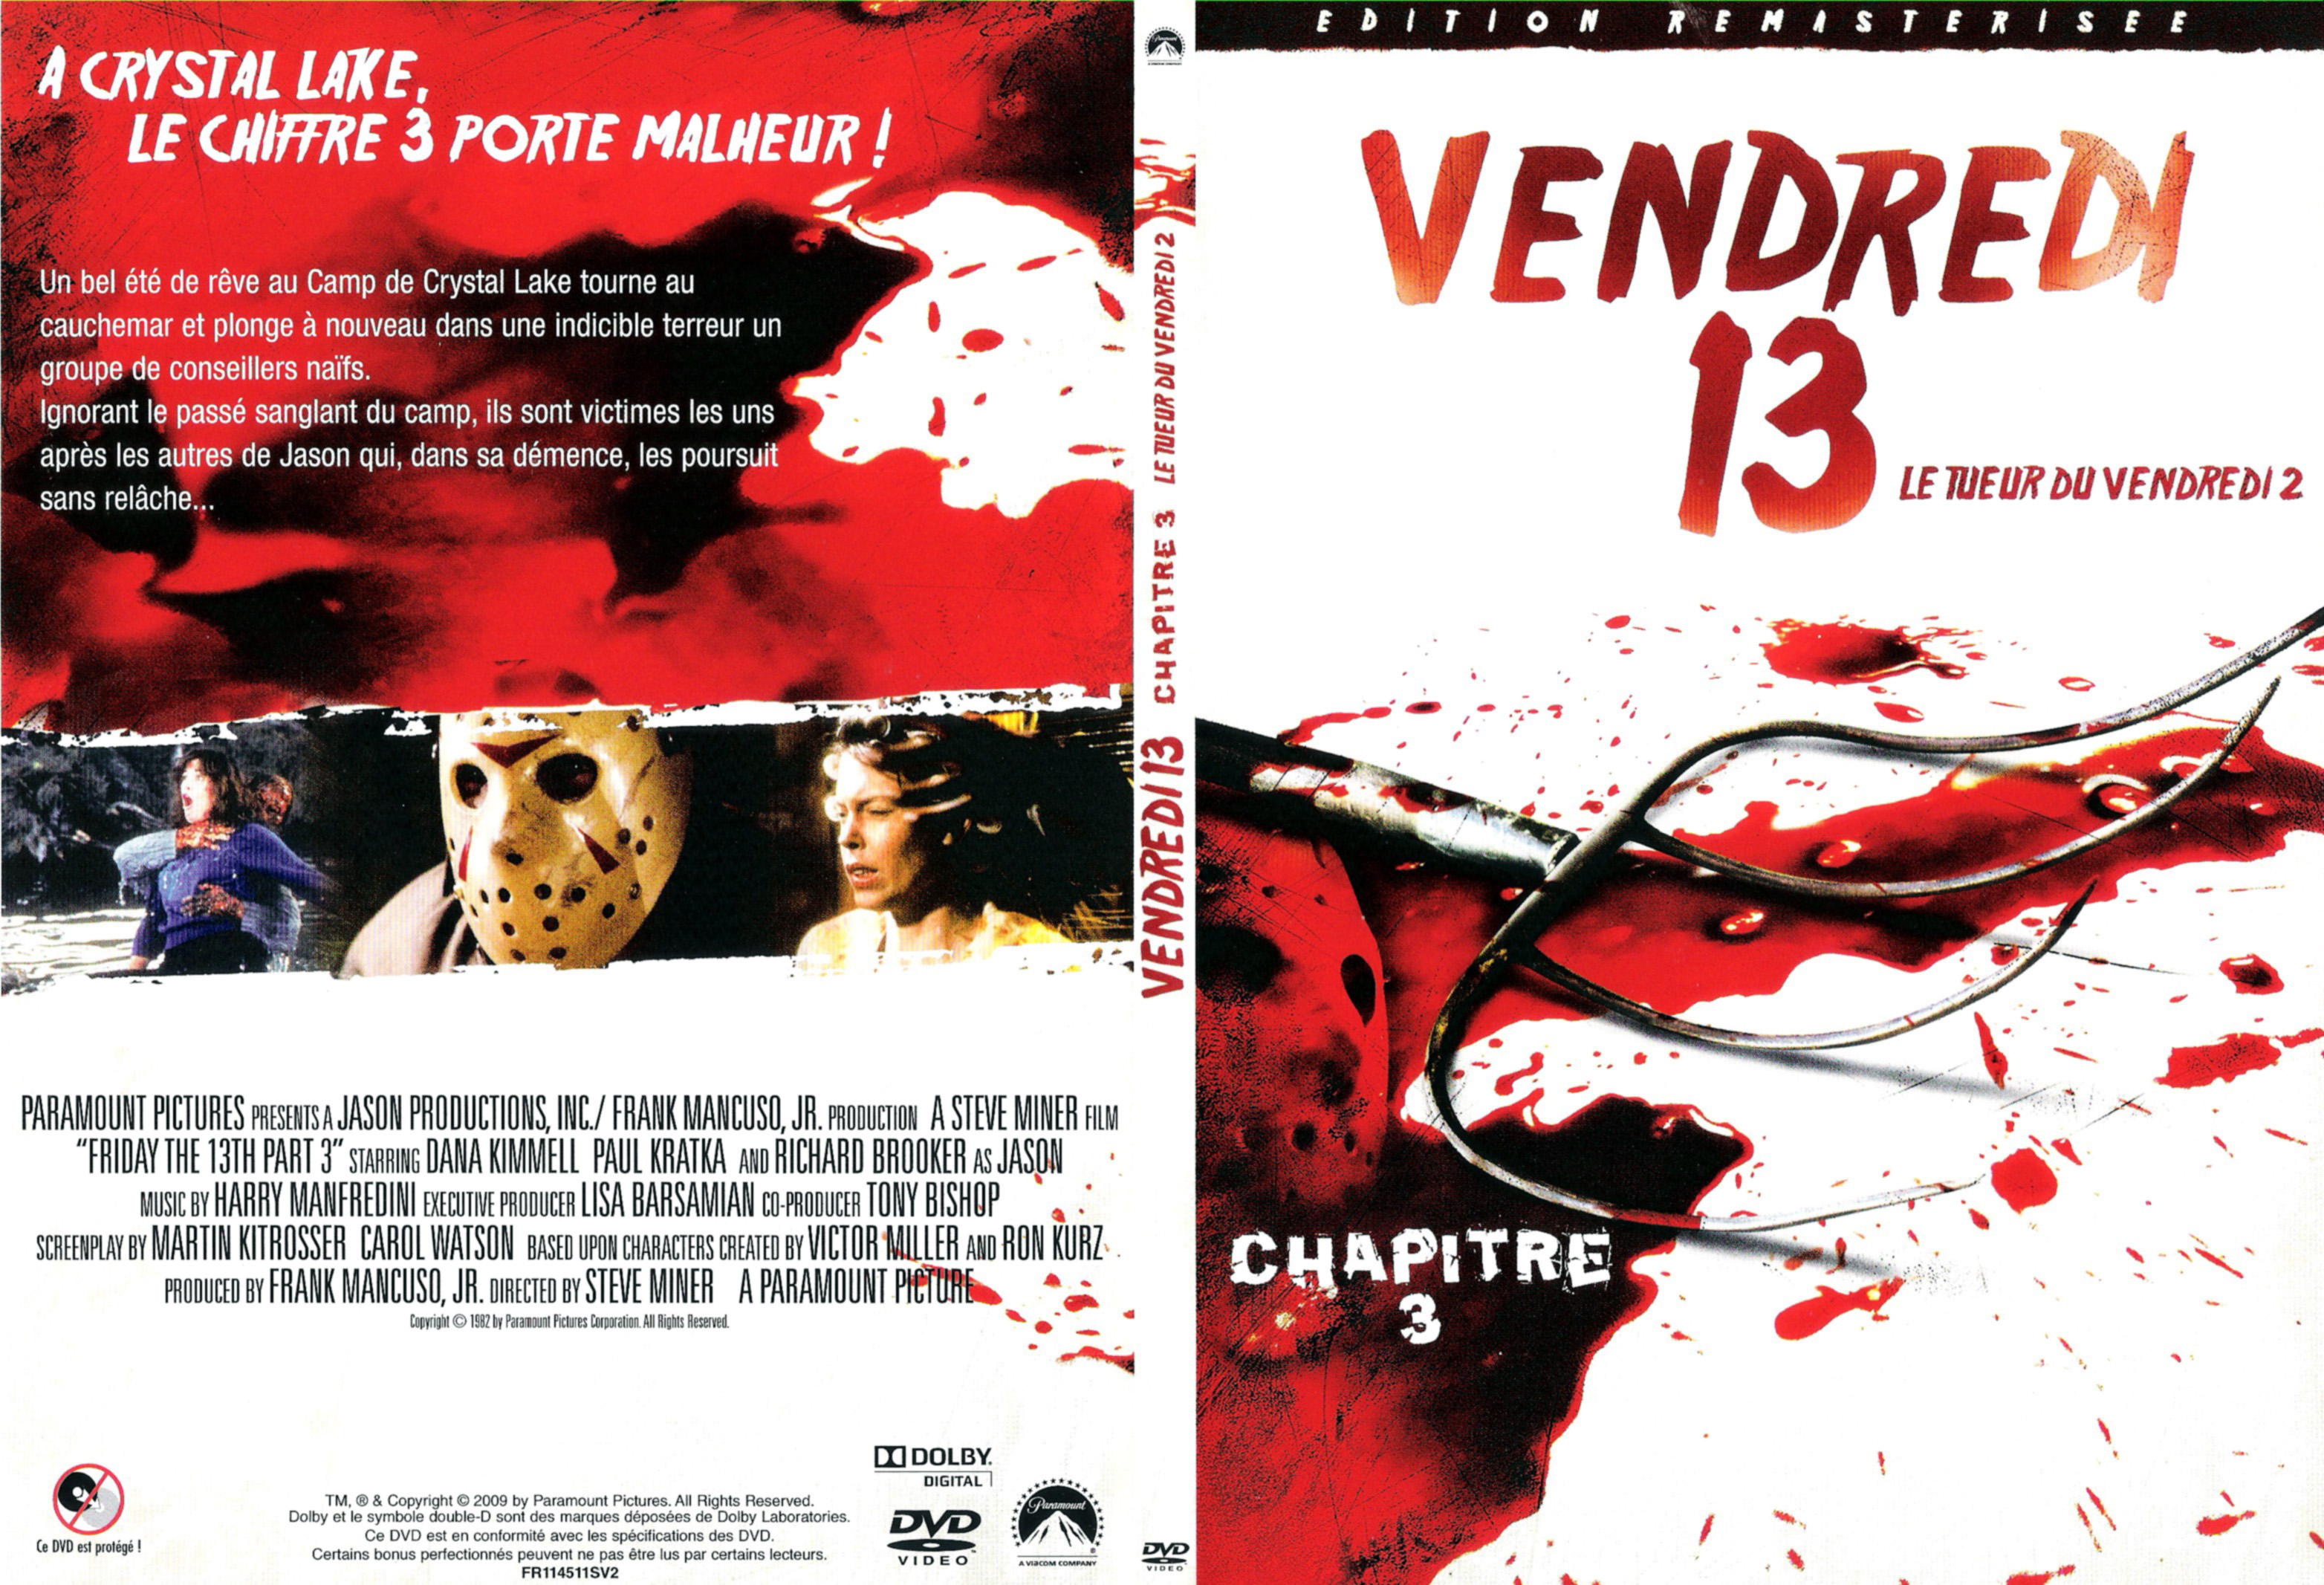 Jaquette DVD Vendredi 13 Le tueur du vendredi 2 v2